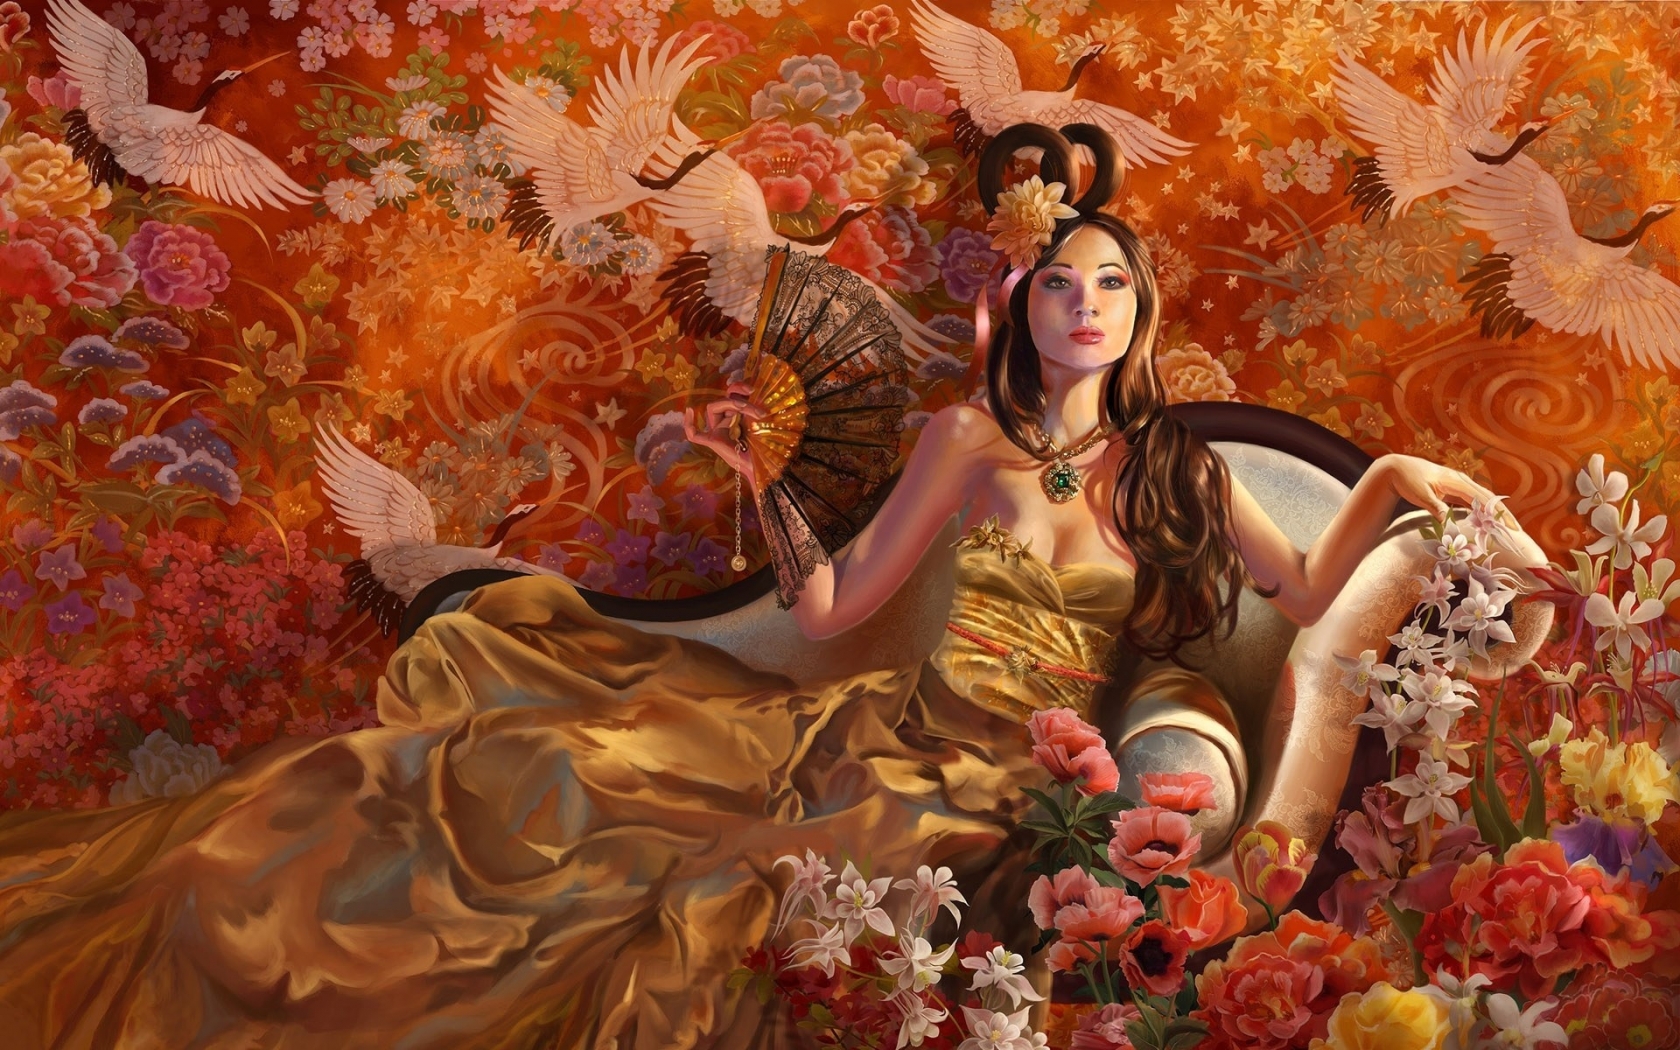 Fantasy Girl Autumn for 1680 x 1050 widescreen resolution